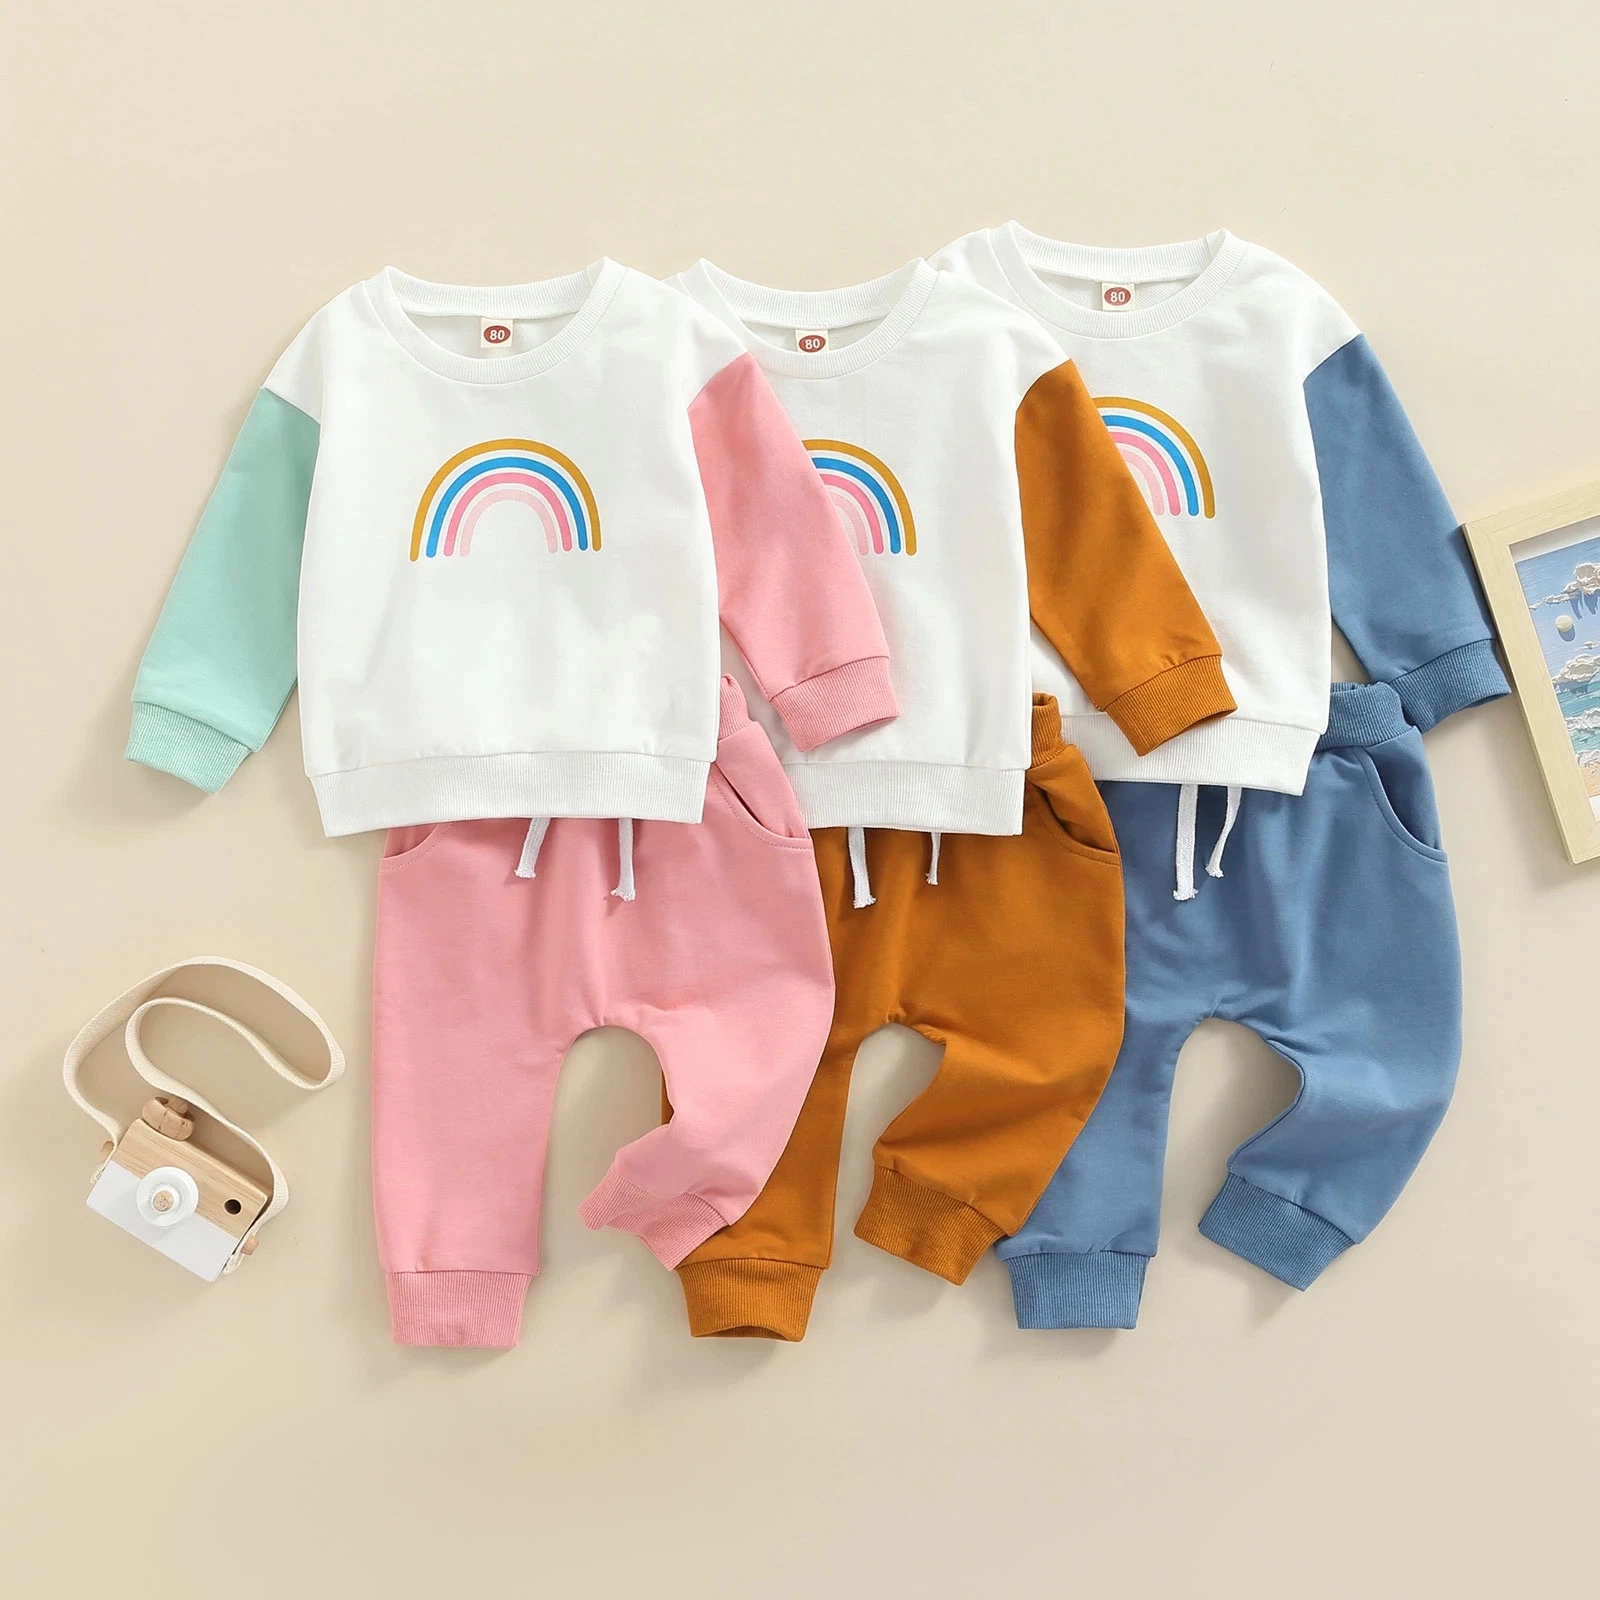 ABC Kids Unique Design Blue Lounge Set Organic Cotton Winter Baby Boy Clothing Soft Thermal Infant Clothes Set